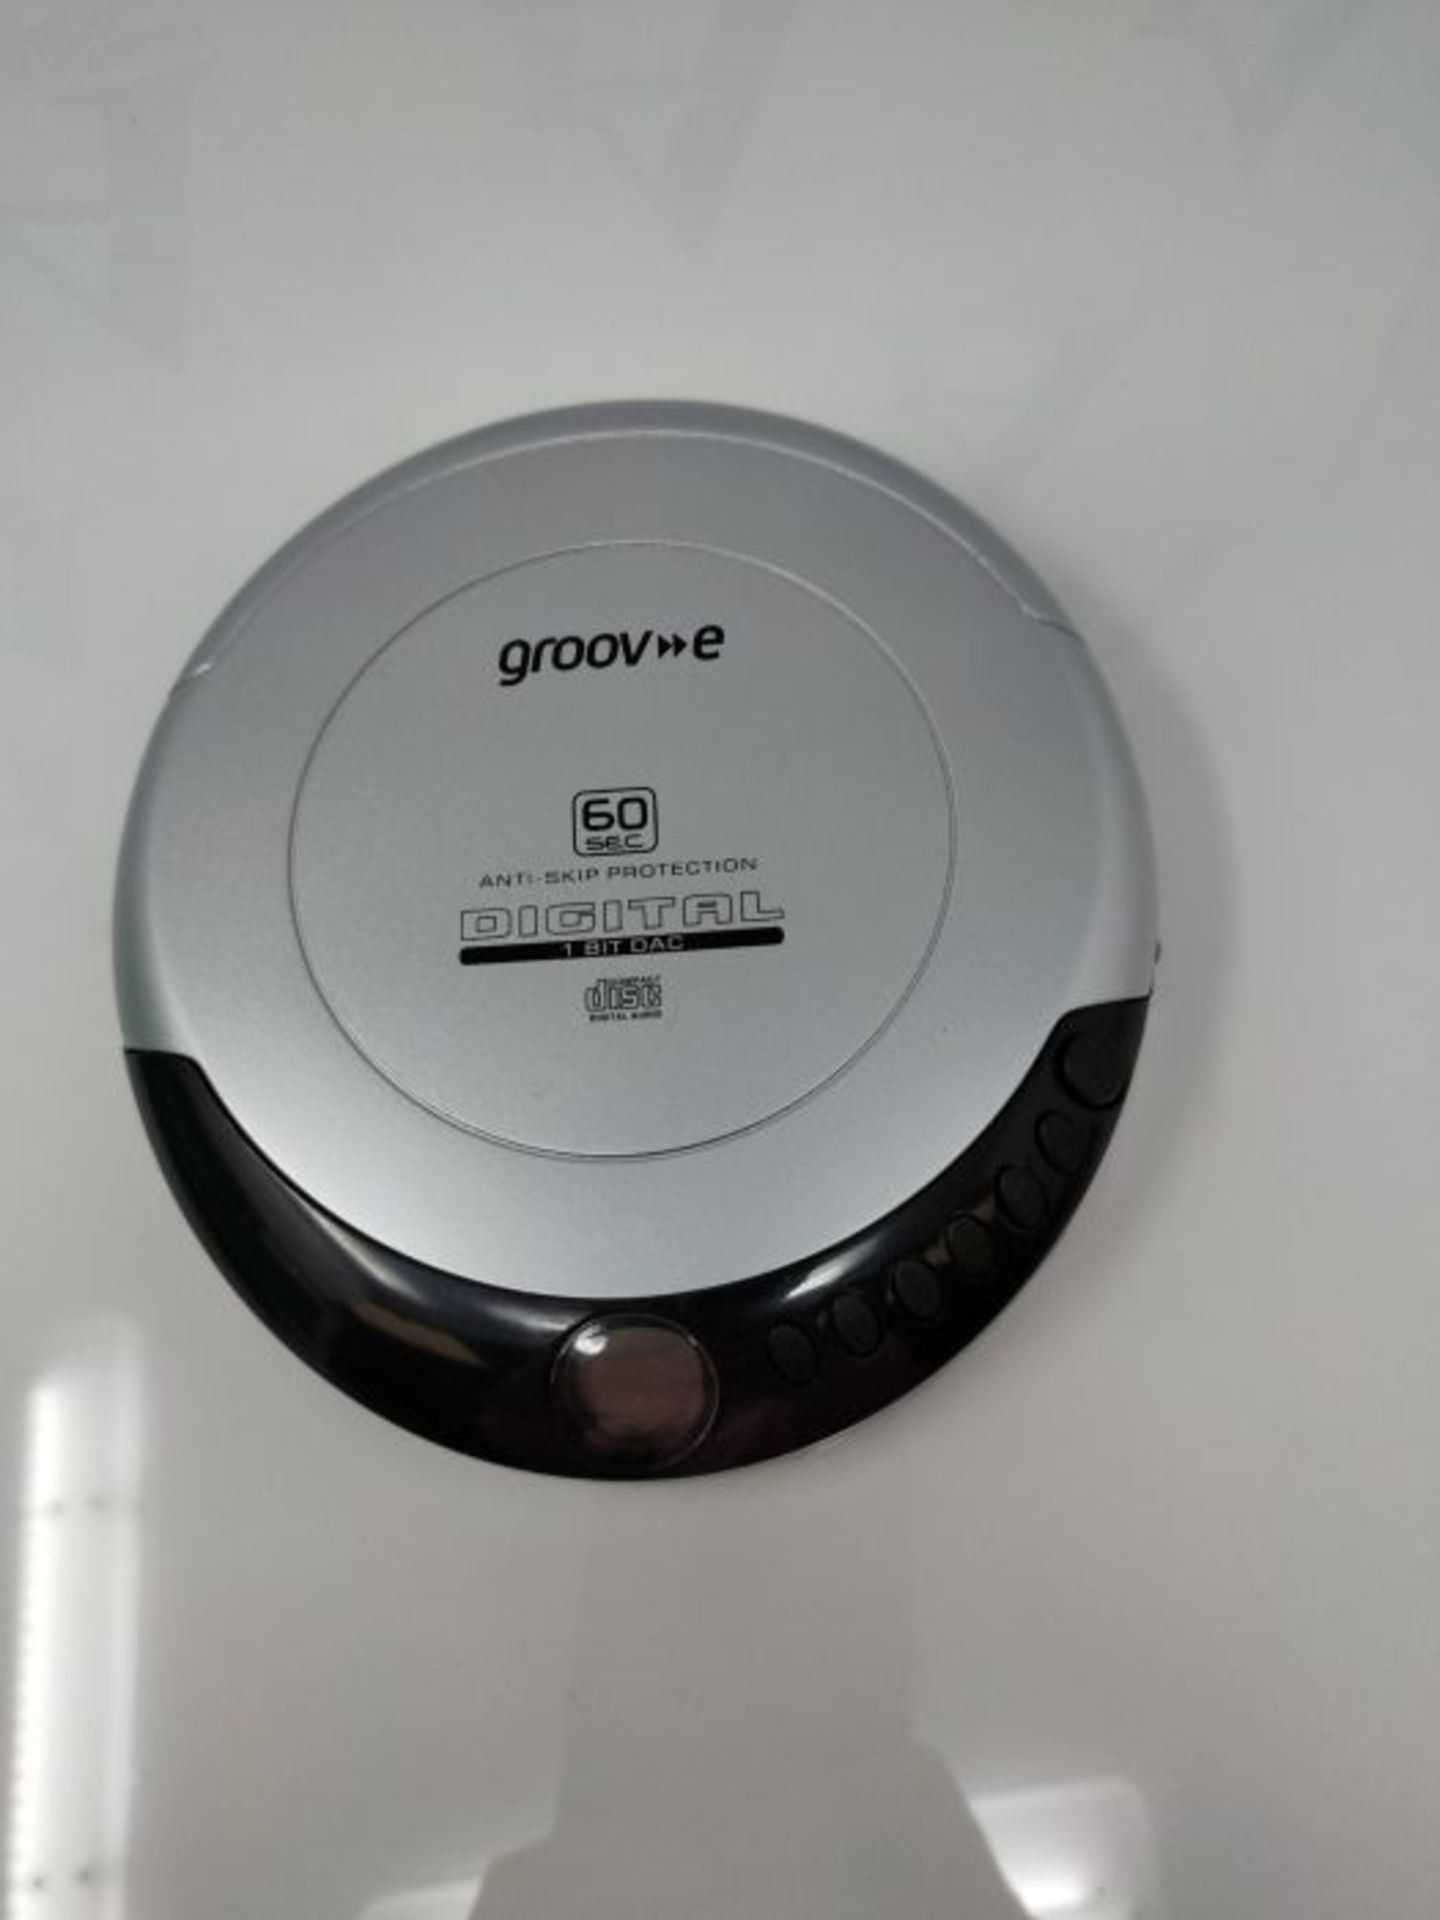 Groov-e GVPS110SR Retro Persönlicher CD-Player mit 20 Titeln programmierbarem Speiche - Image 2 of 4